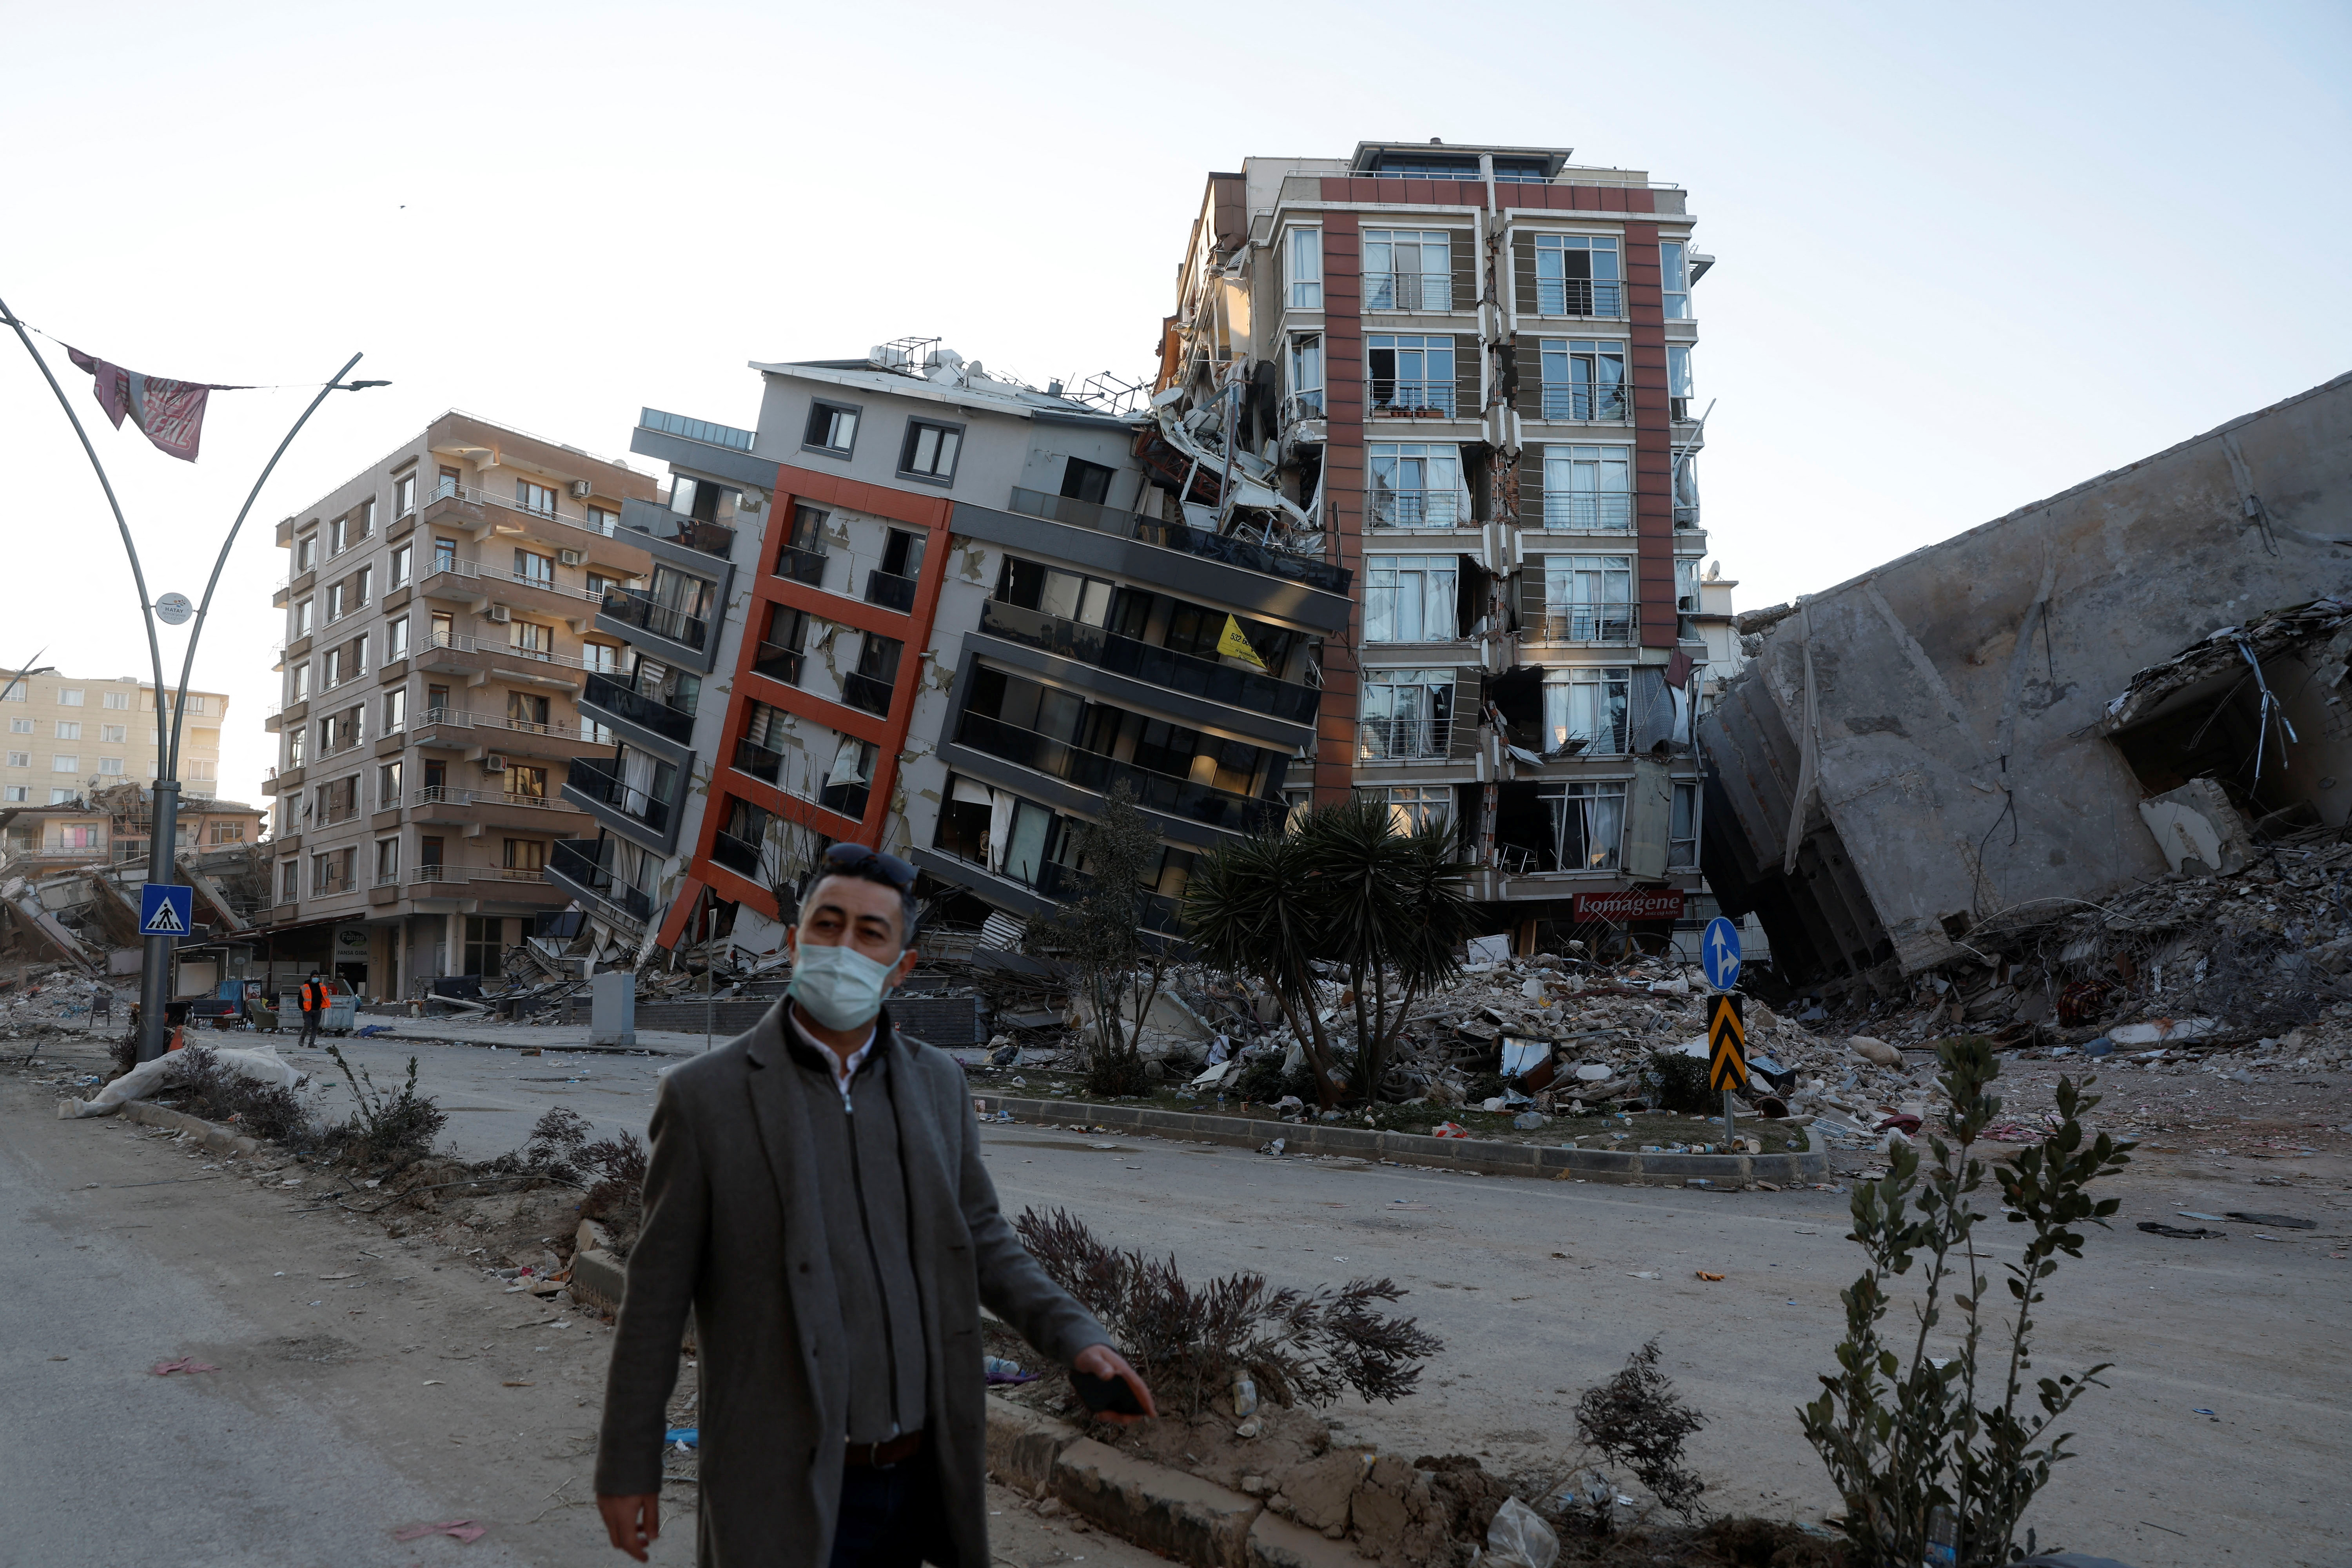 Un hombre camina delante de edificios semiderrumbados tras un terremoto mortal en Hatay, Turquía, 15 de febrero de 2023. REUTERS/Clodagh Kilcoyne